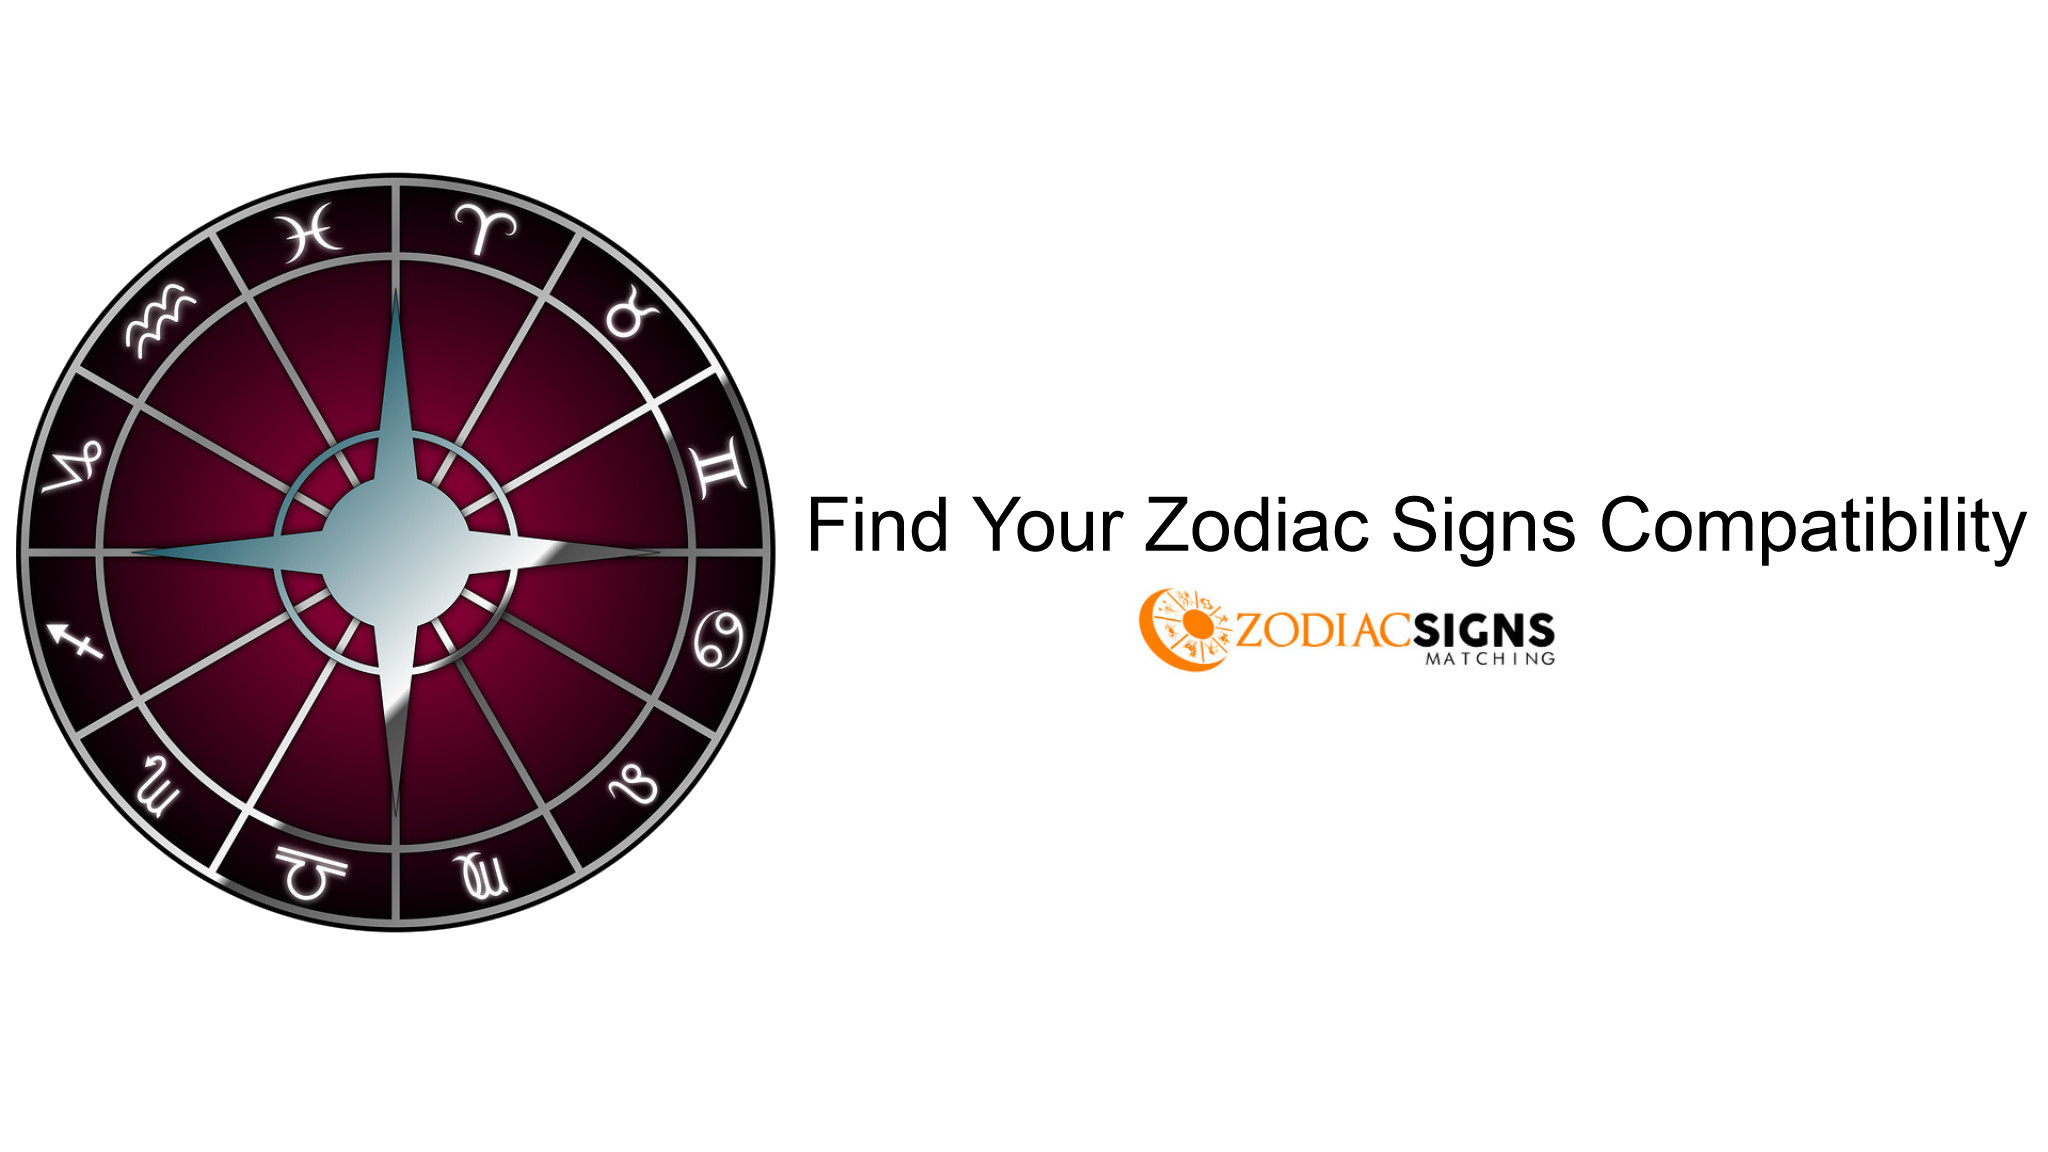 Zodiac Signs Matching